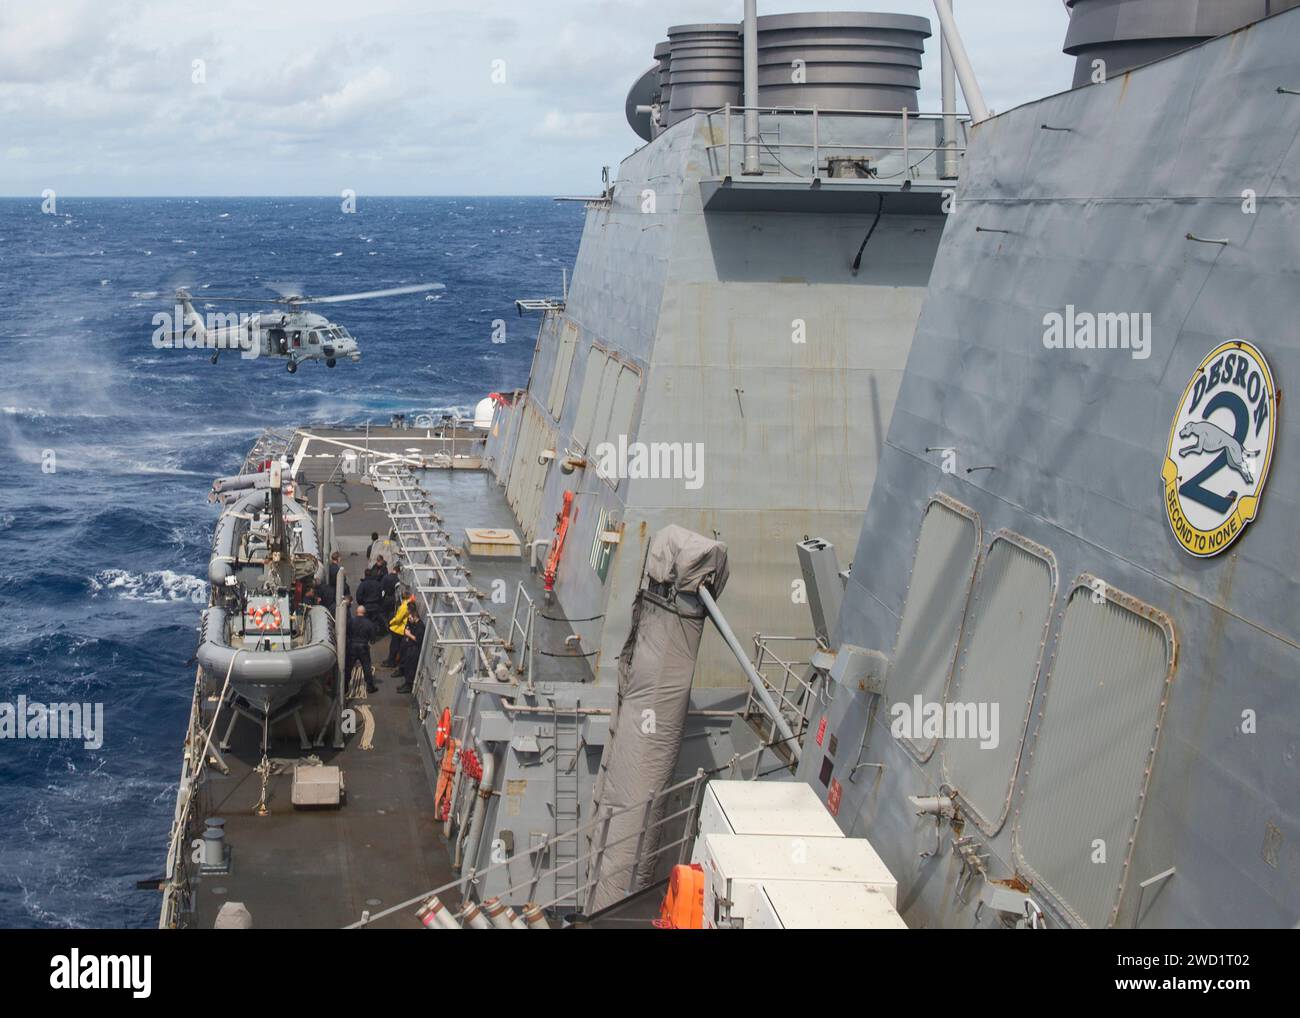 Ein MH-60S Sea Hawk Hubschrauber bereitet sich auf die Landung an Bord der USS Mitscher vor. Stockfoto